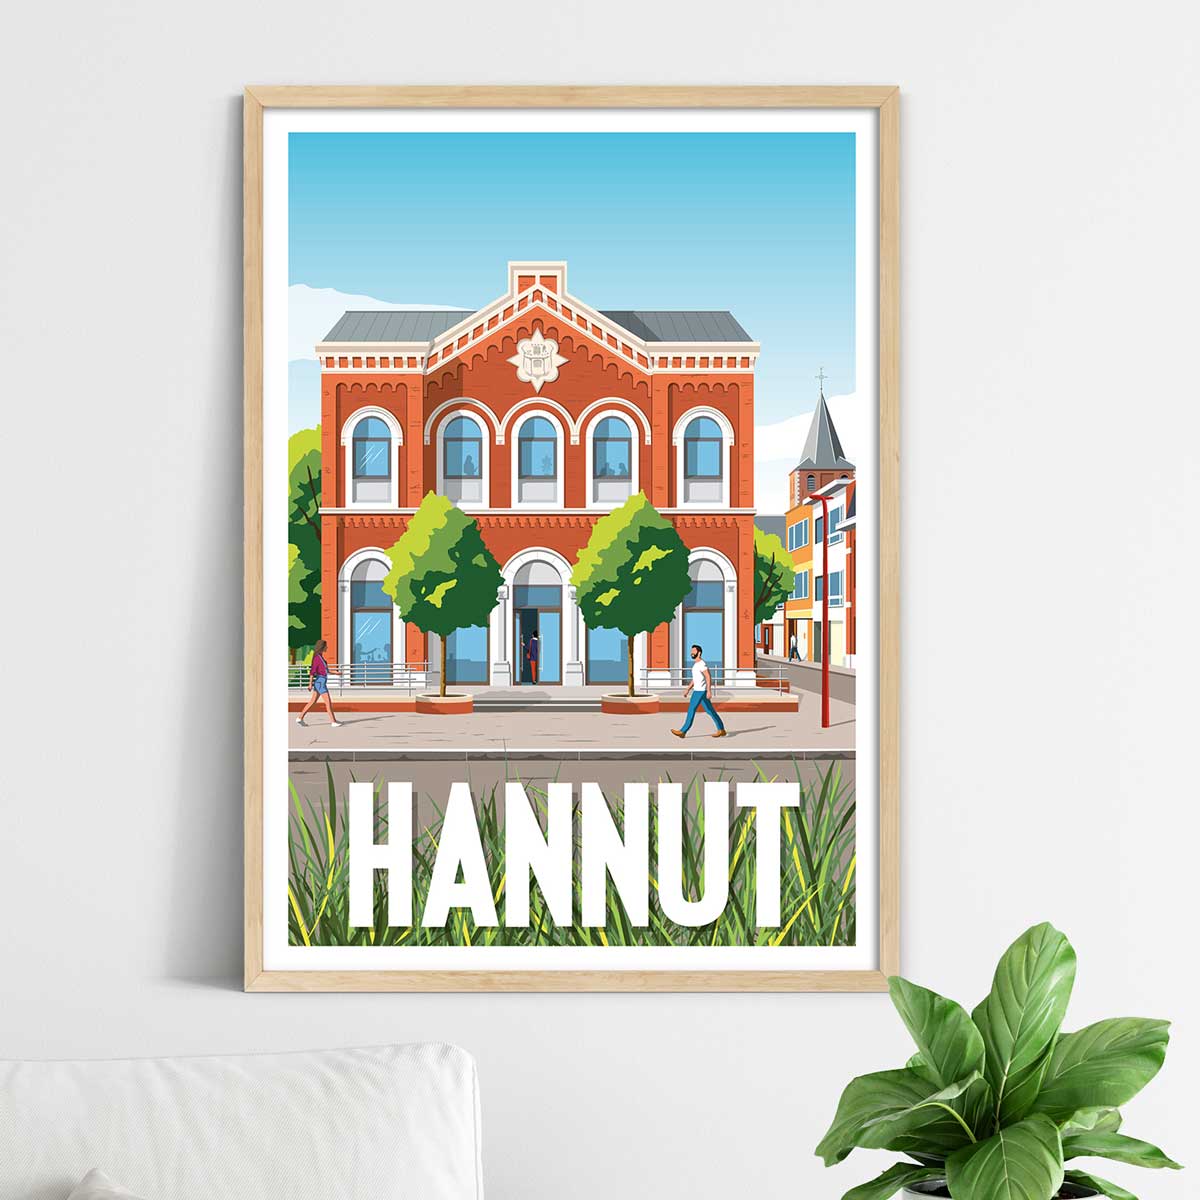 Poster Hannut